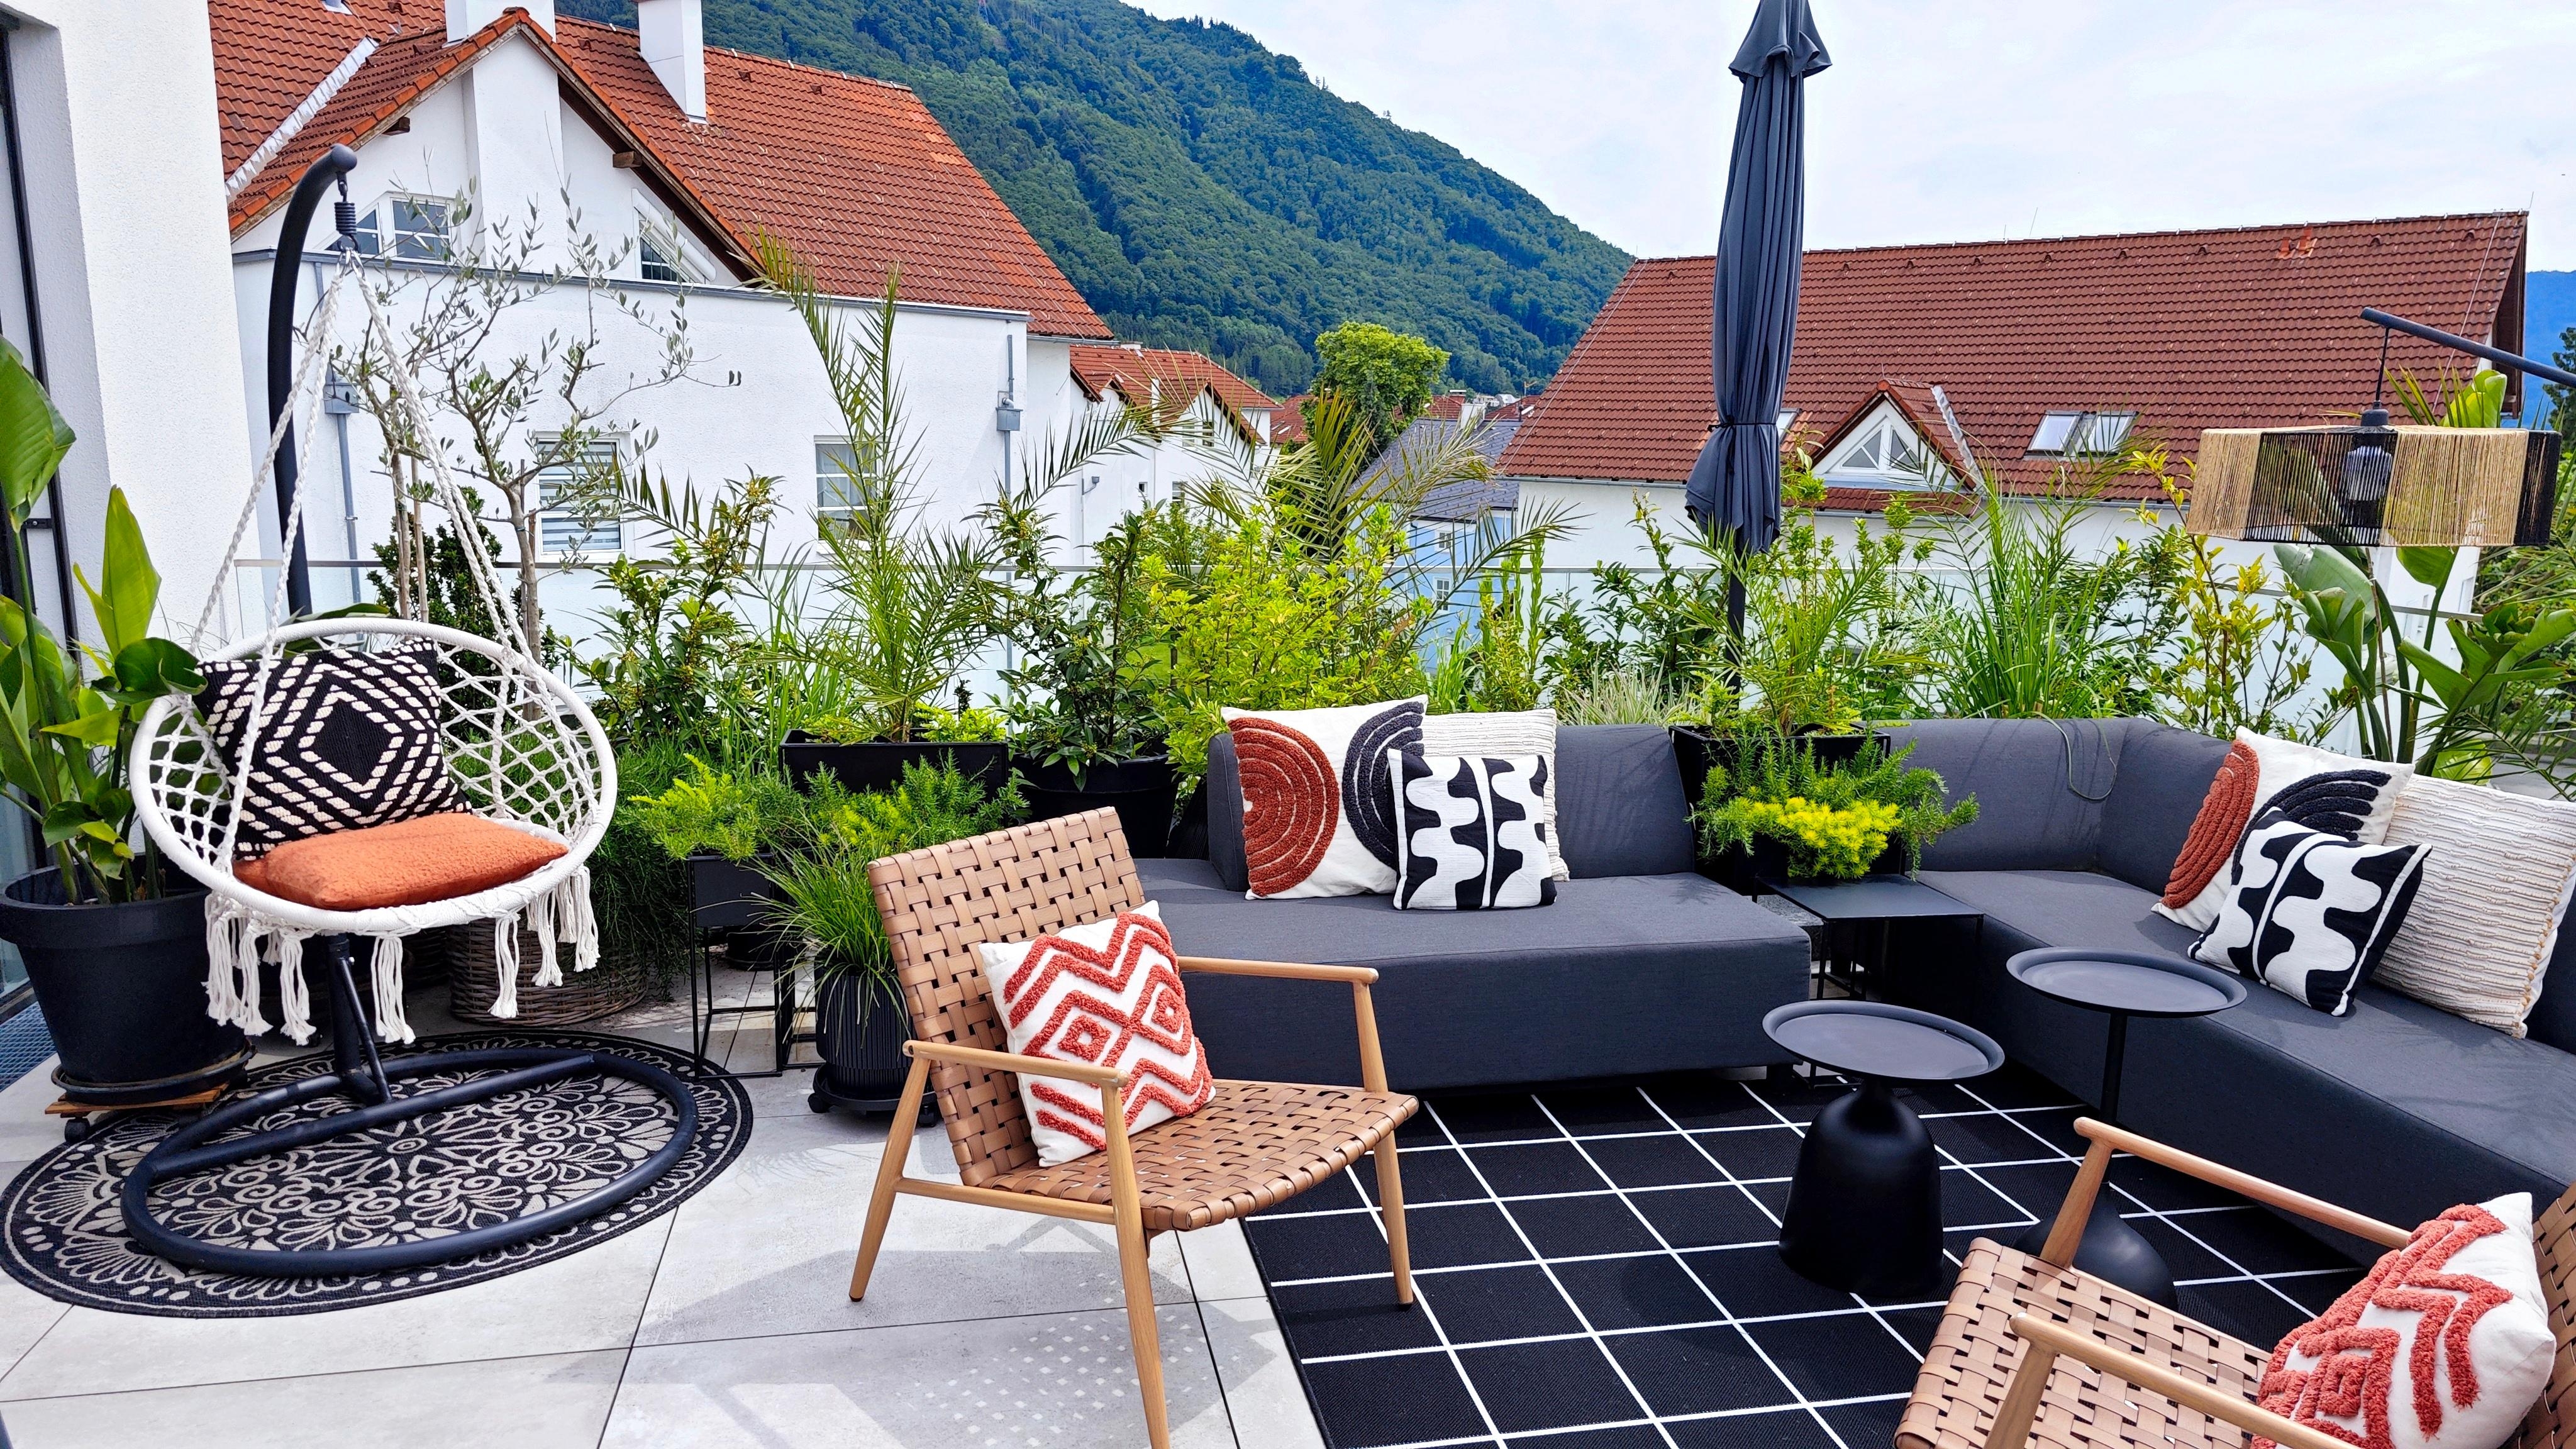 #outdoor #terrasse #summer #chillen #frischluft #lebensraum #outdoorwohnzimmer #genießen #sonne #pflanzenliebe #grün #gardening #home #couchliebt #nature